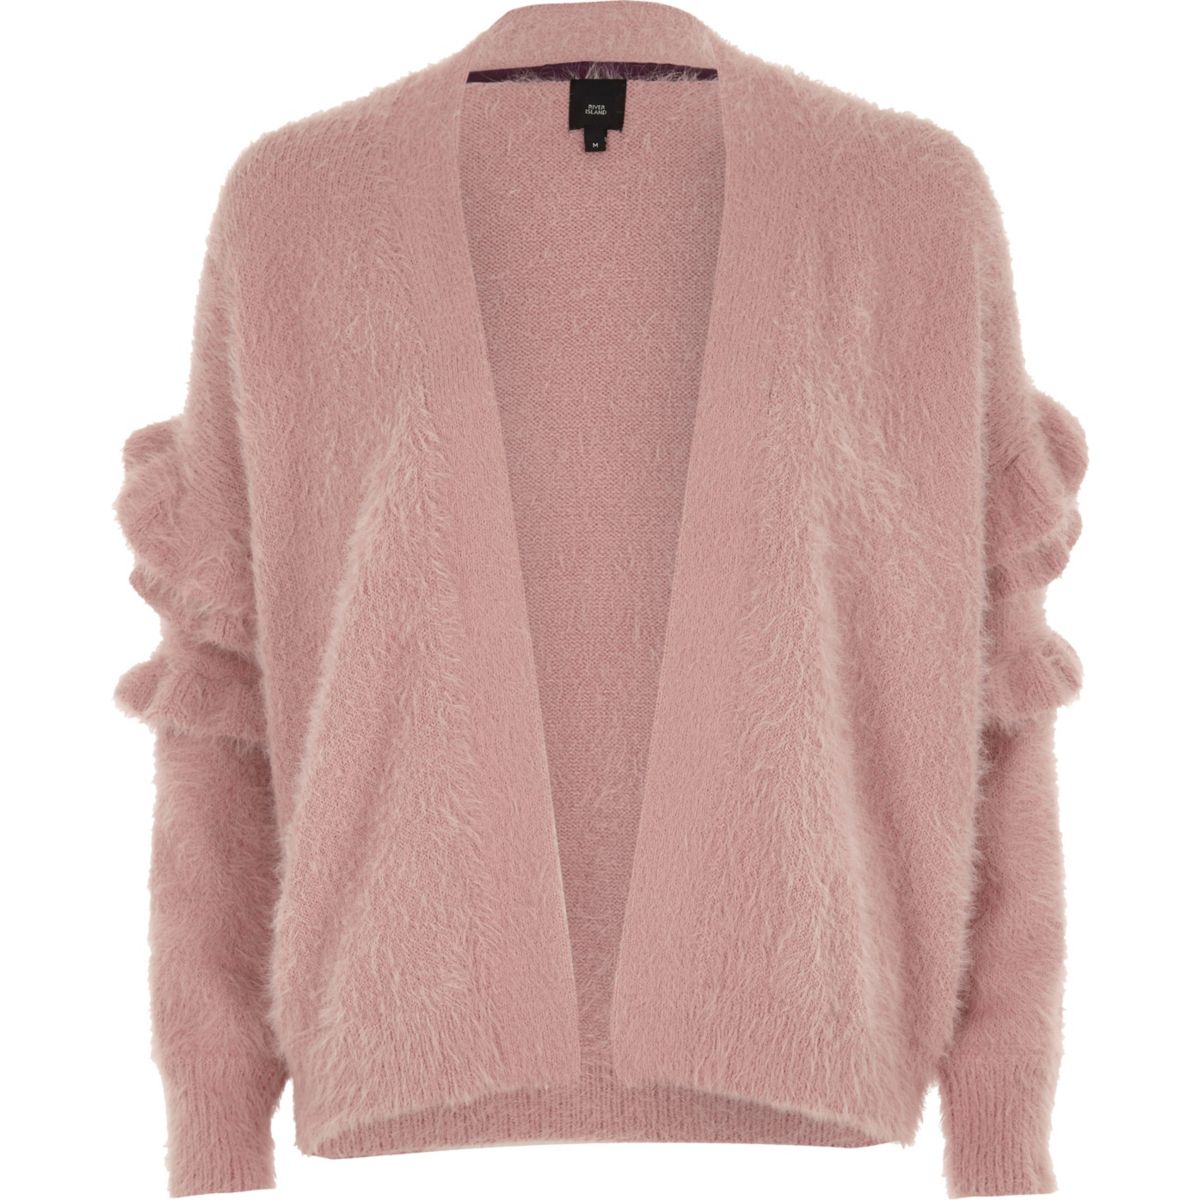 Dusty pink fluffy frill sleeve cardigan - Knitwear - Sale - women